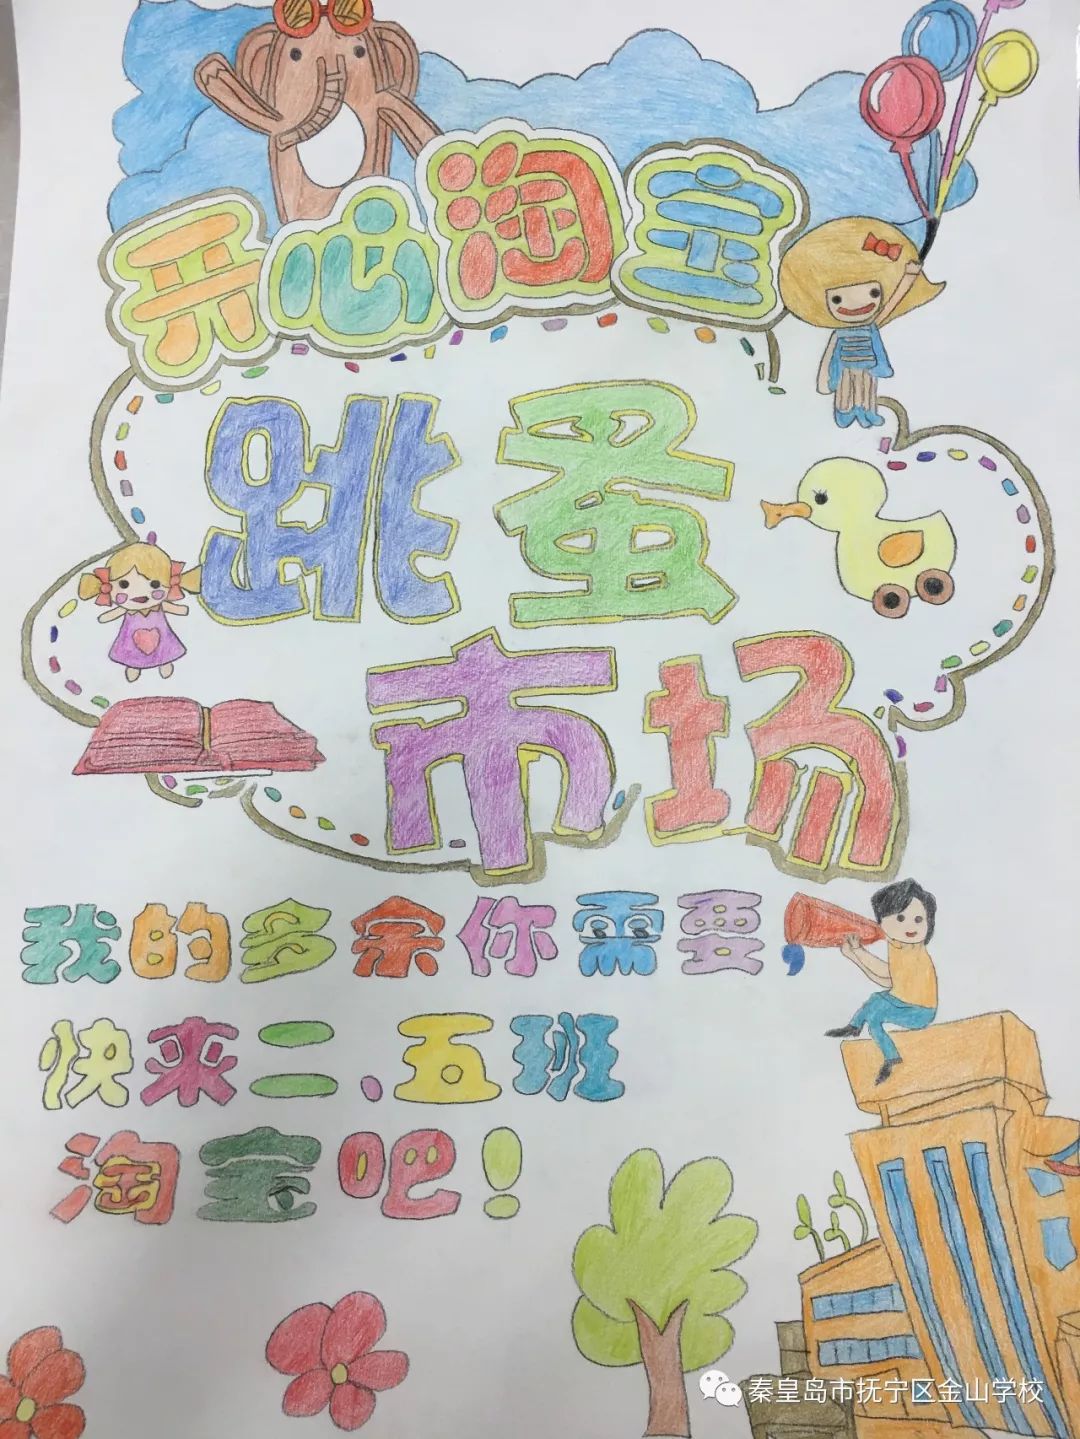 【六一】金山学校举办"快乐小书虫"图书跳蚤市场淘书活动